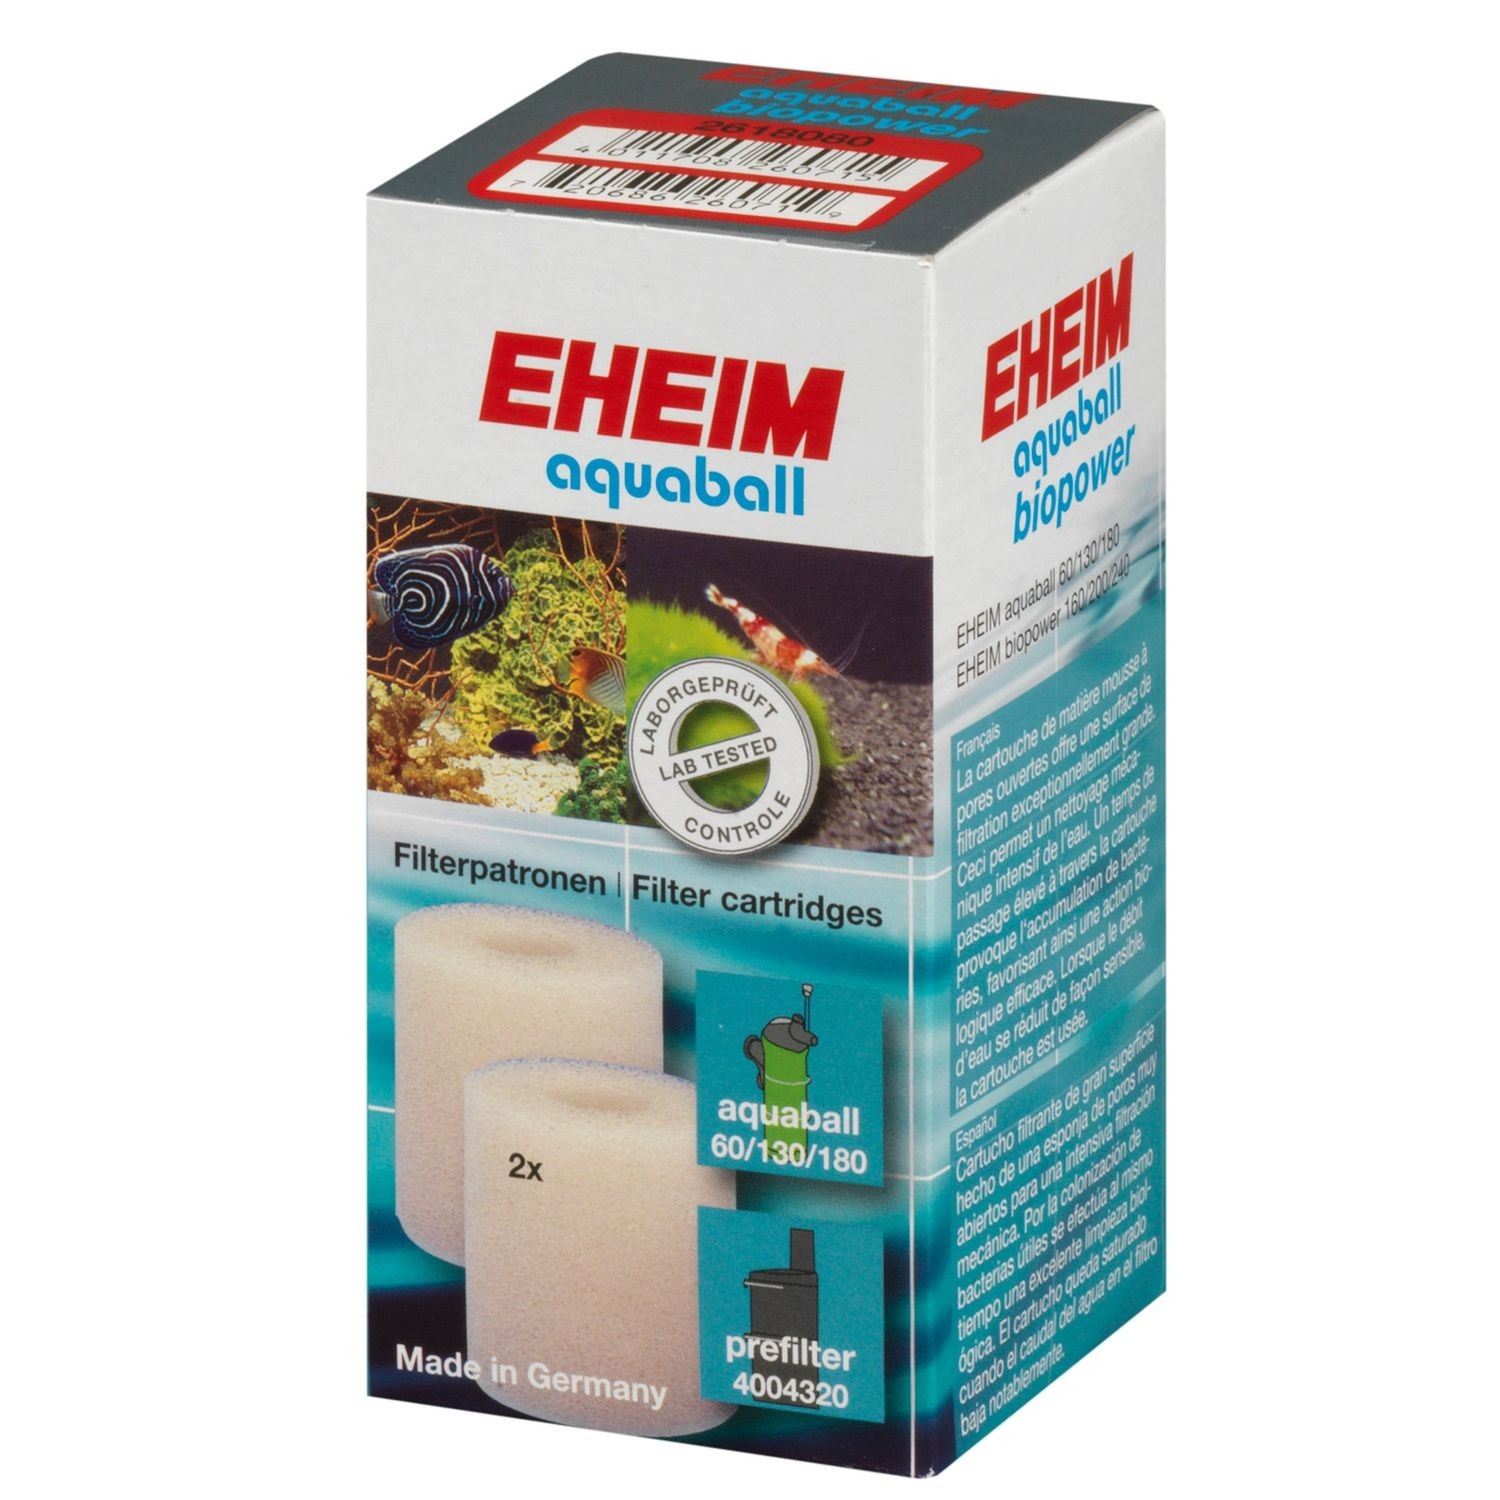 Cartucho filtrante EHEIM para filtros Aquaball 60 / 130 / 180 y Biopower 160 / 200 / 240